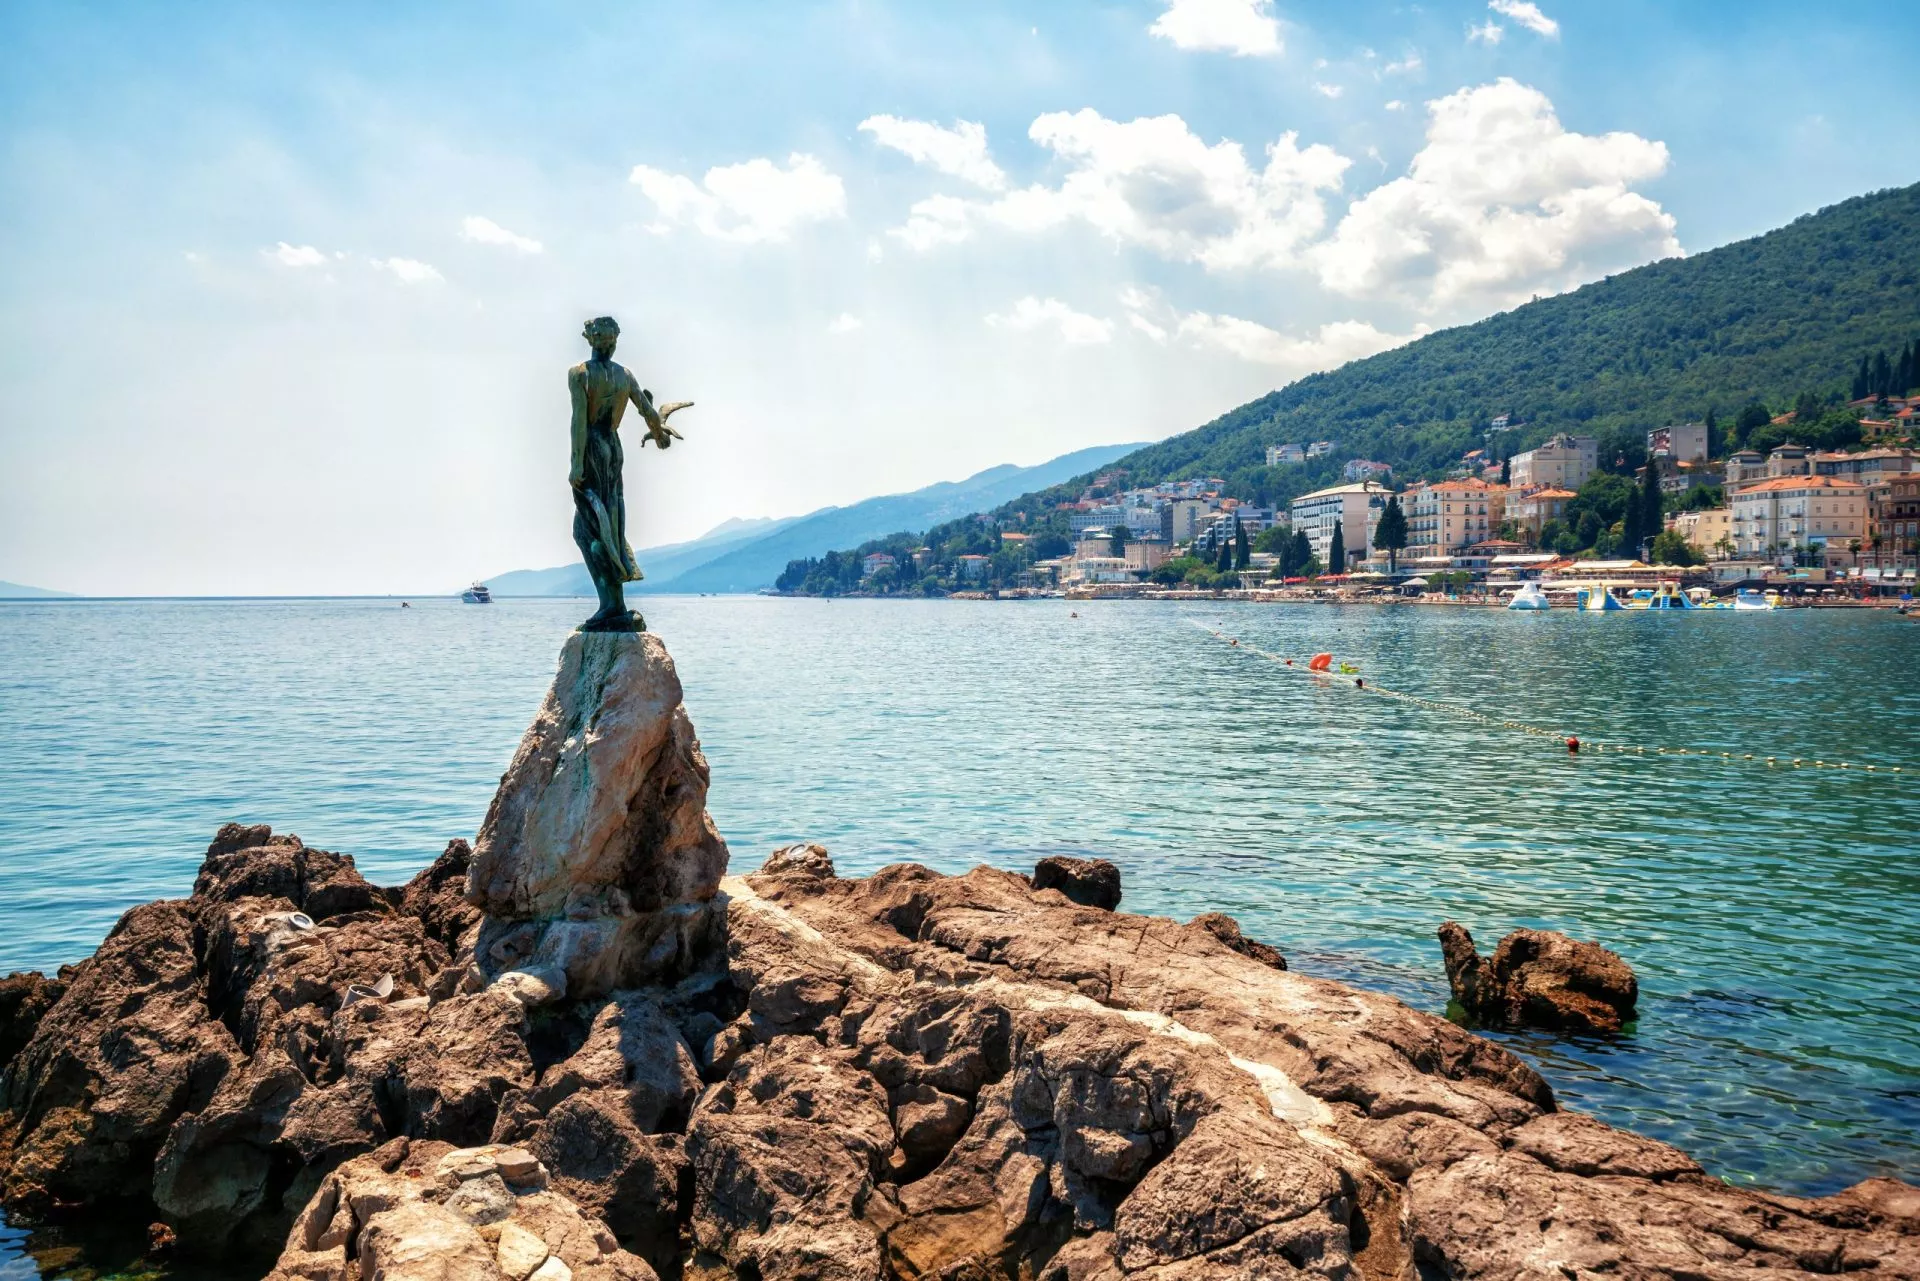 Die historische Statue der Jungfrau mit der Möwe ist ein Symbol nicht nur für Opatija, sondern für die gesamte Kvarner-Region. Die Statue an der Adriaküste befindet sich in der touristischen Stadt Opatija in Kroatien, Europa